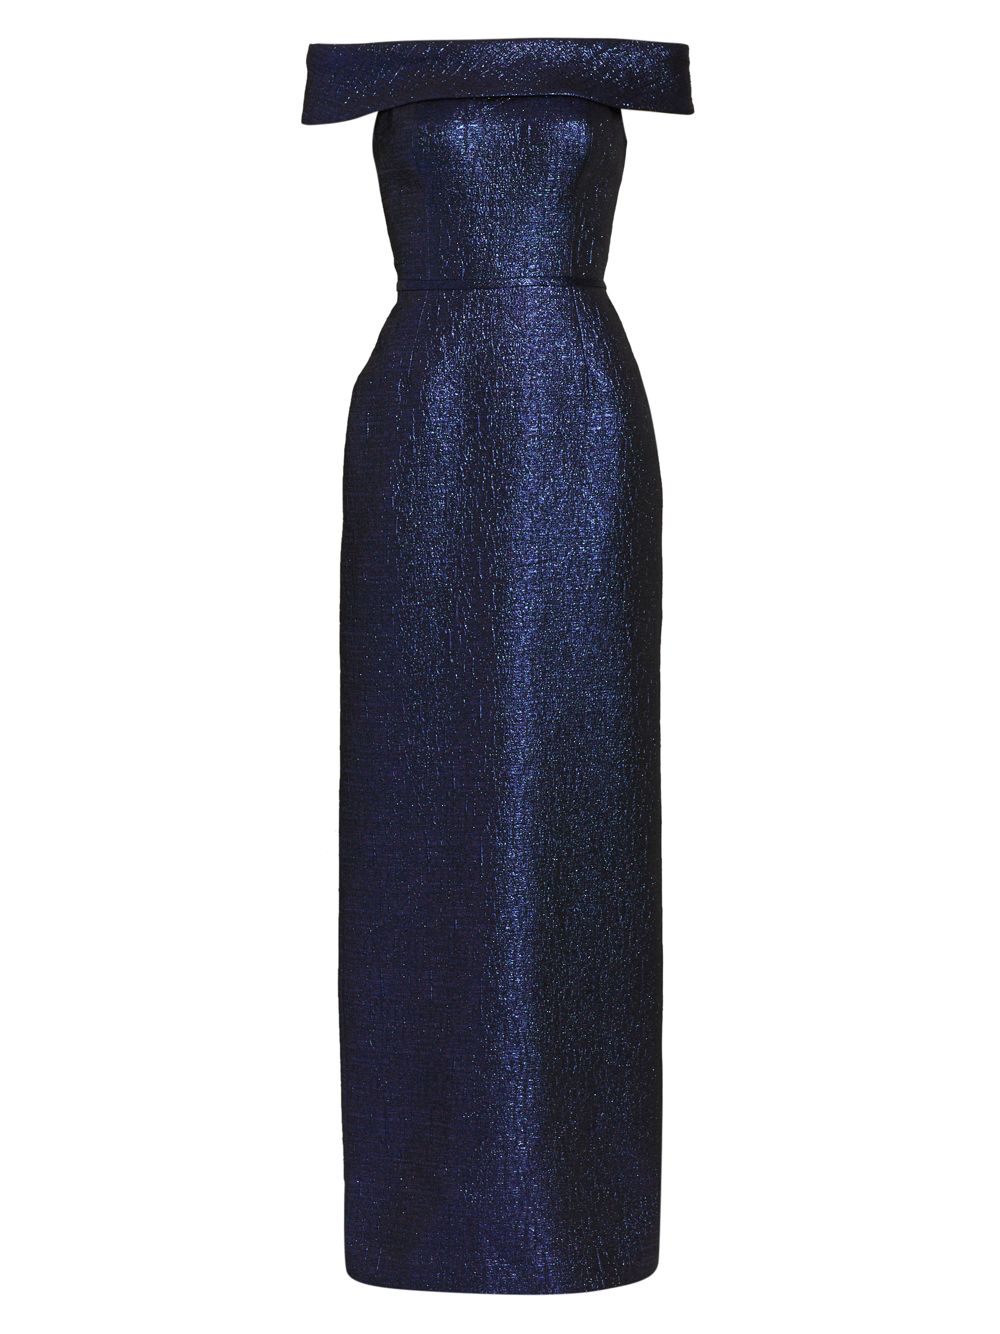 Платье из металлизированного жаккарда с открытыми плечами Teri Jon by Rickie Freeman, сапфировый